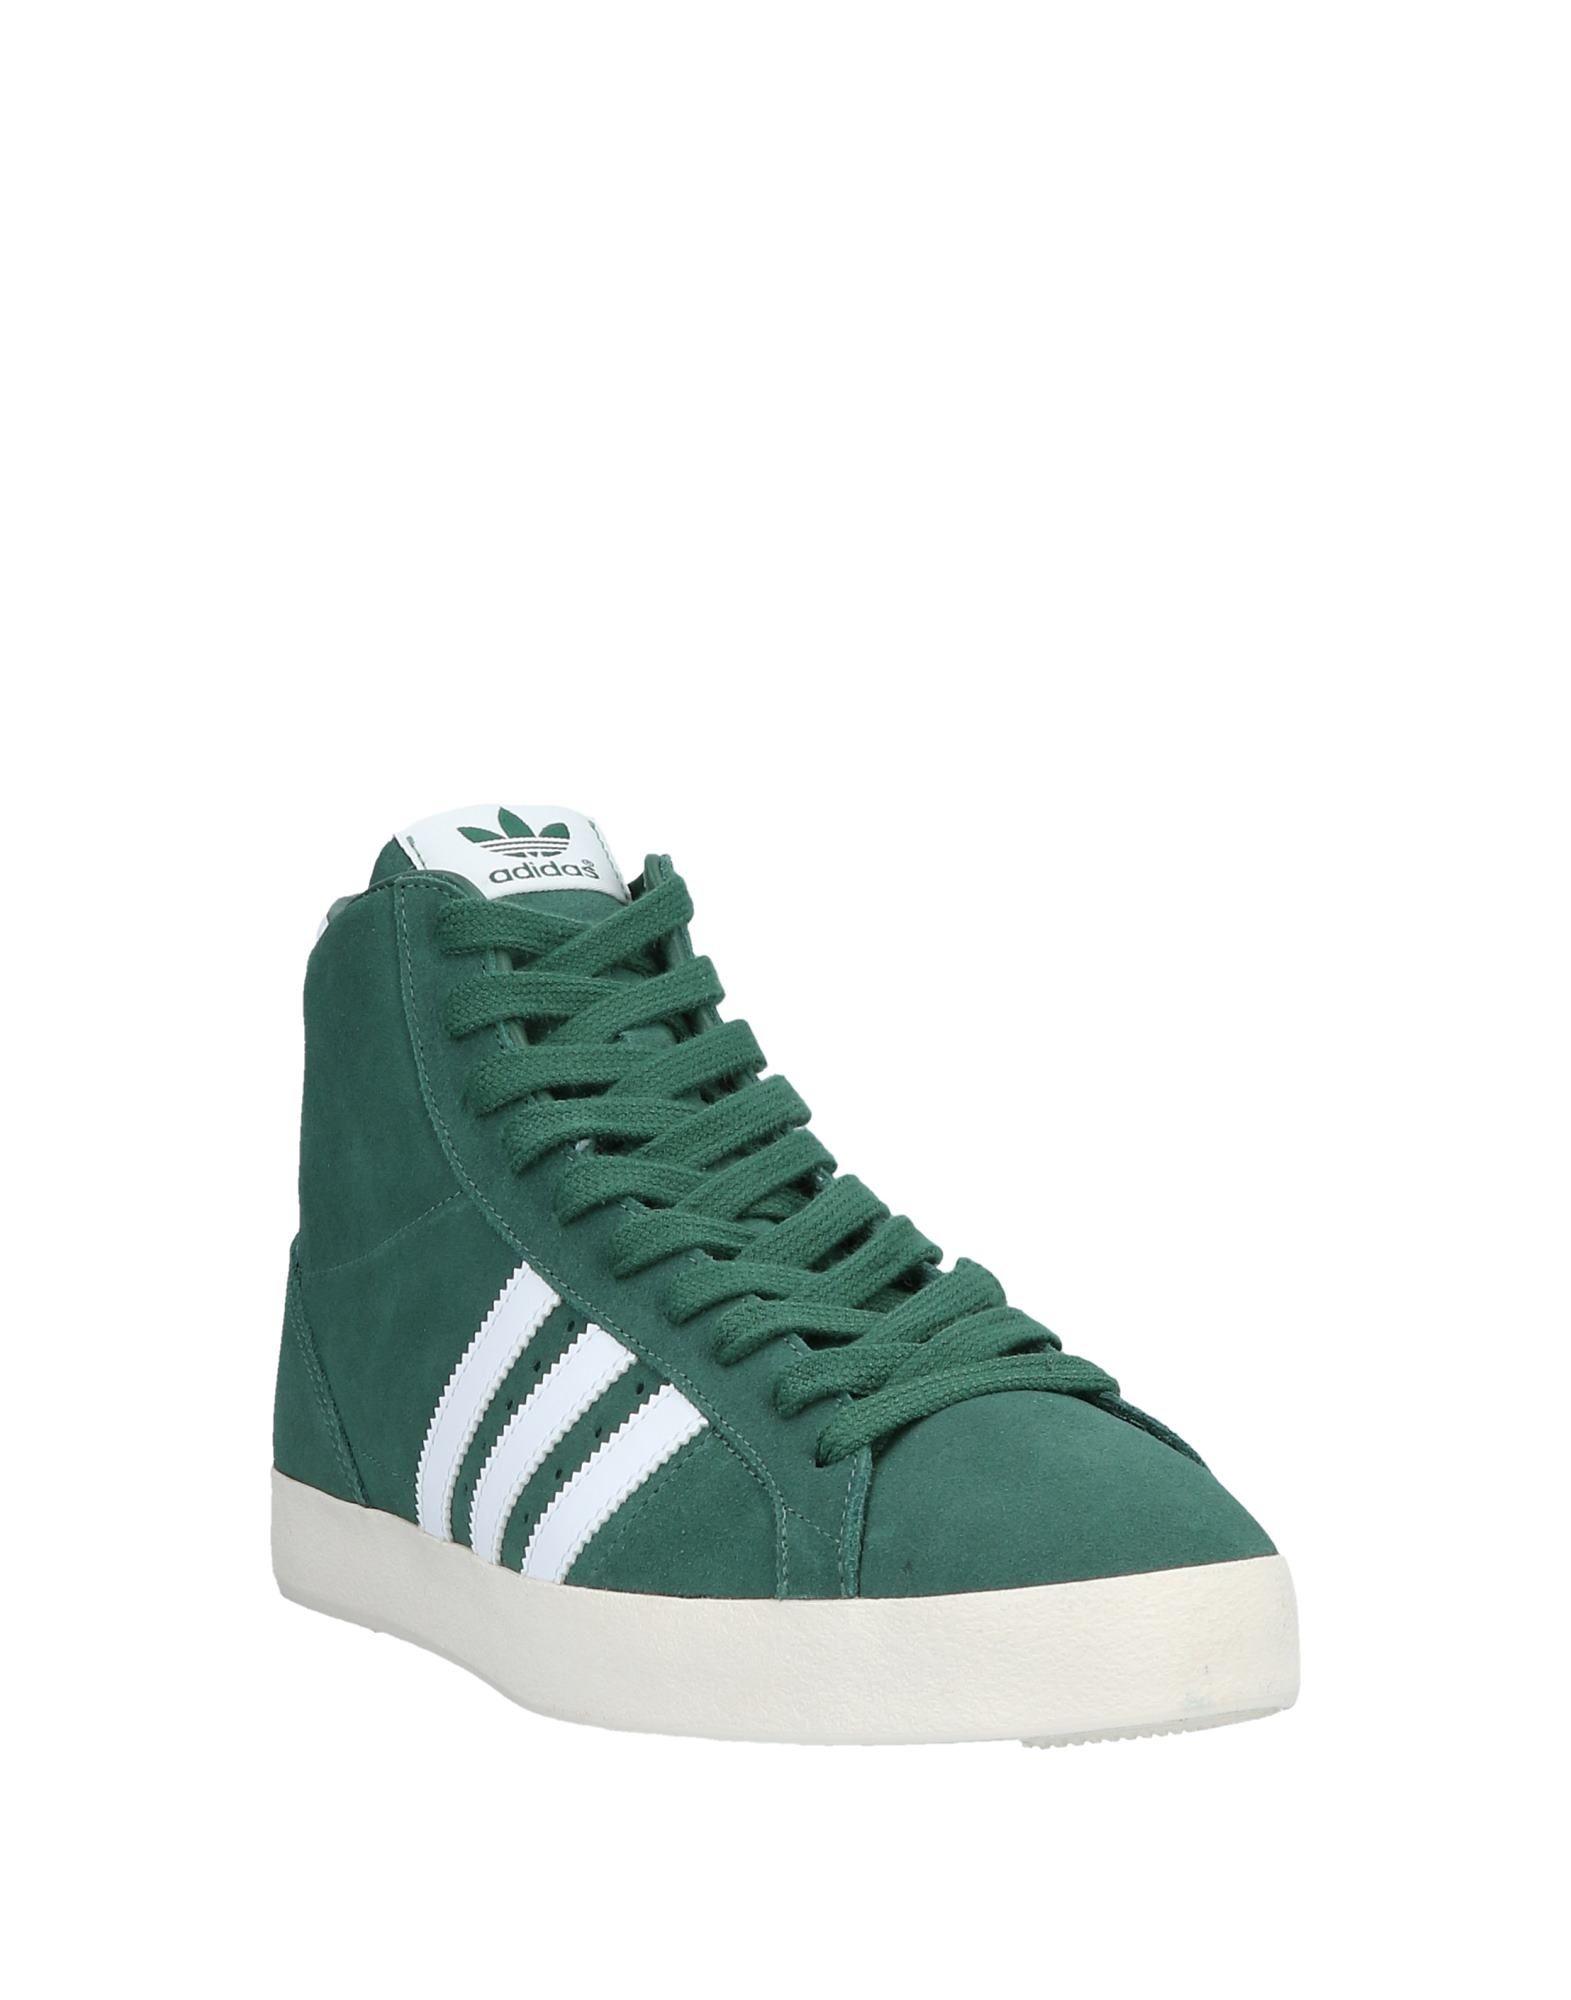 adidas Originals Gazelle Green Suede Sneakers | ASOS